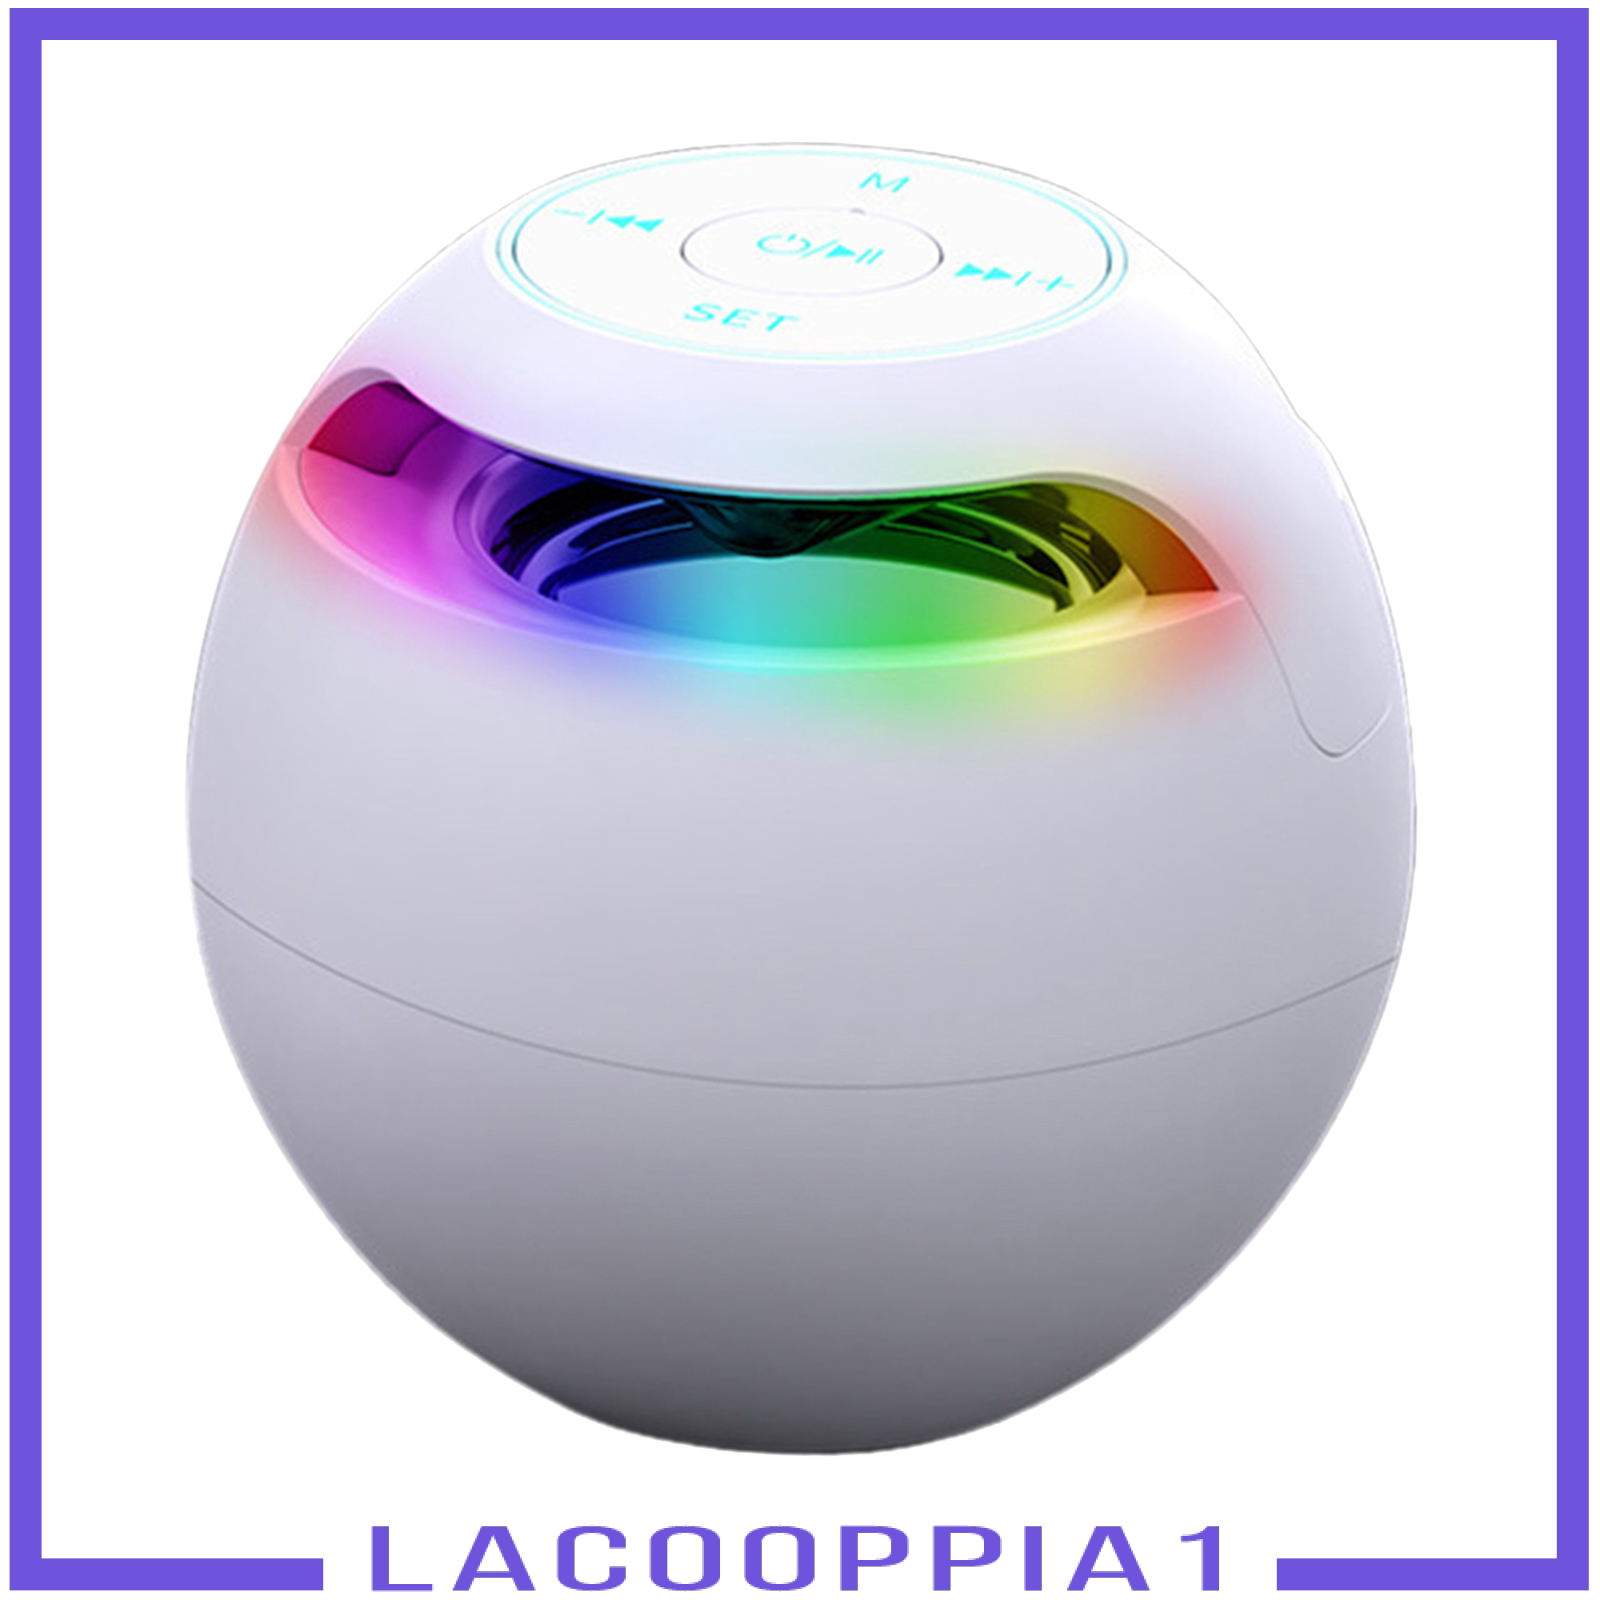 Loa Lapopoppia1 Siêu Trầm Không Dây Kết Nối Bluetooth